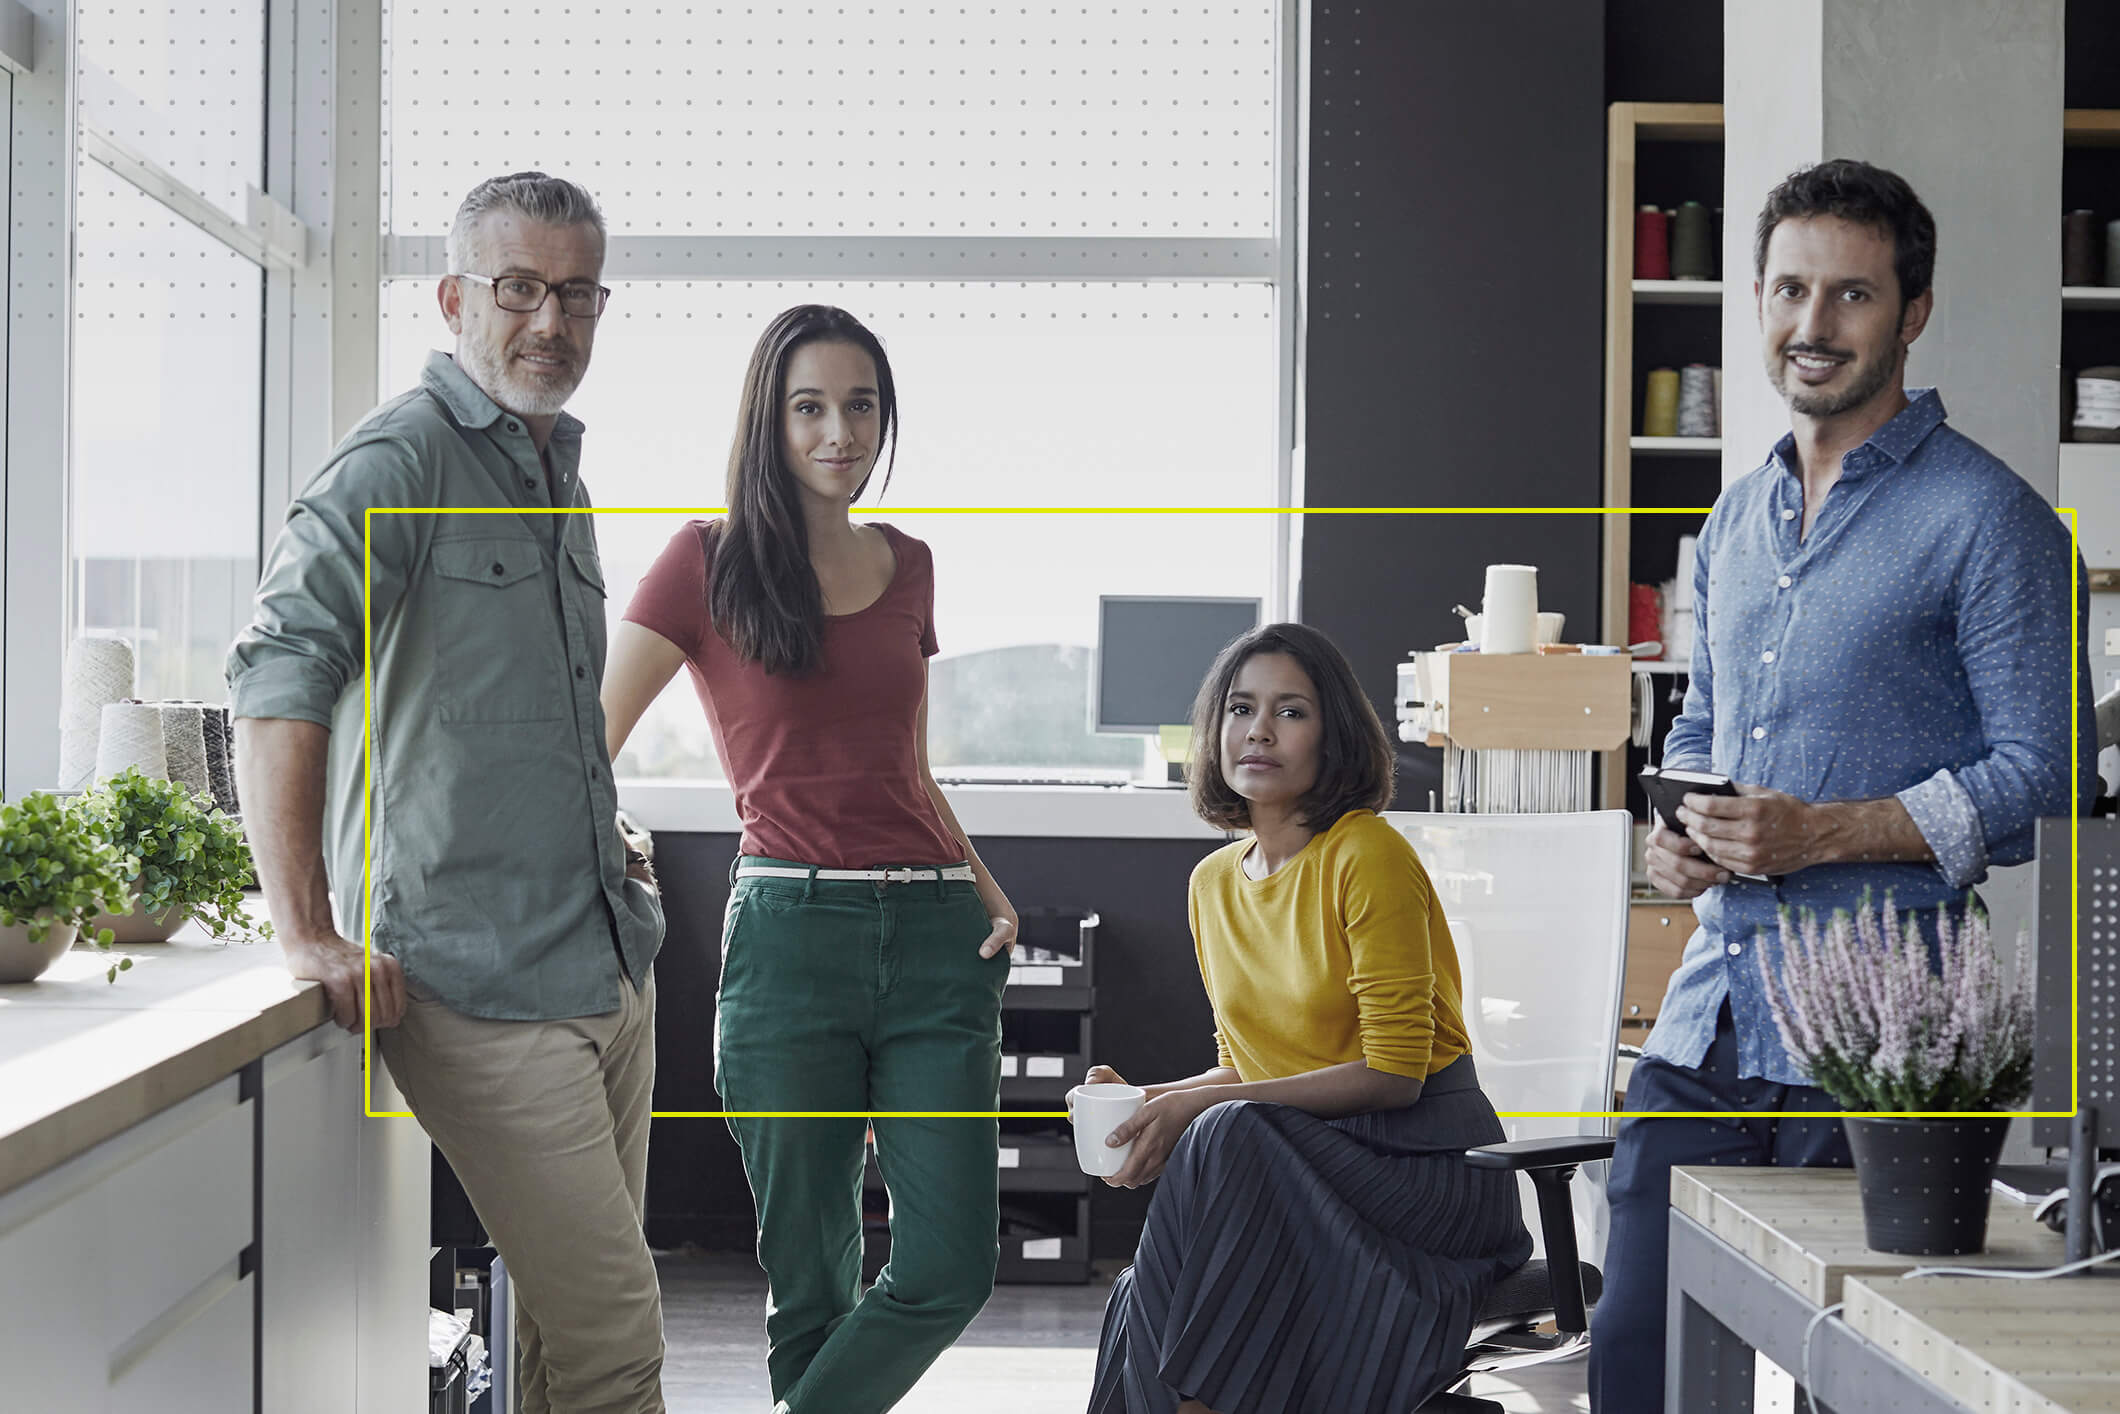 Retrato de 4 personas, 2 hombres y dos mujeres viendo a la cámara en una oficina de trabajo. 